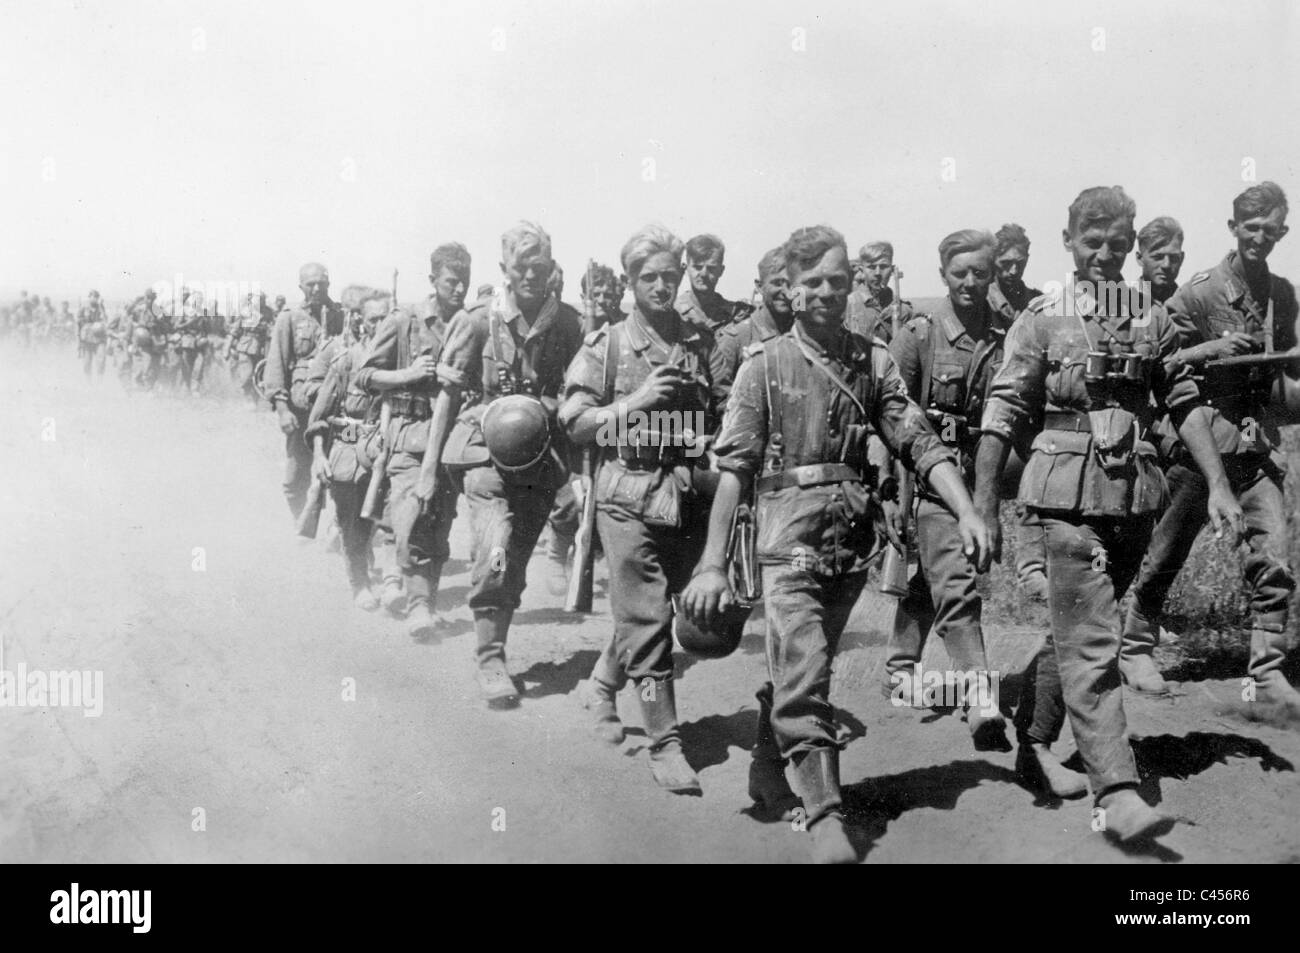 L'infanterie allemande marchant dans le sud de la Russie, 1942 Banque D'Images